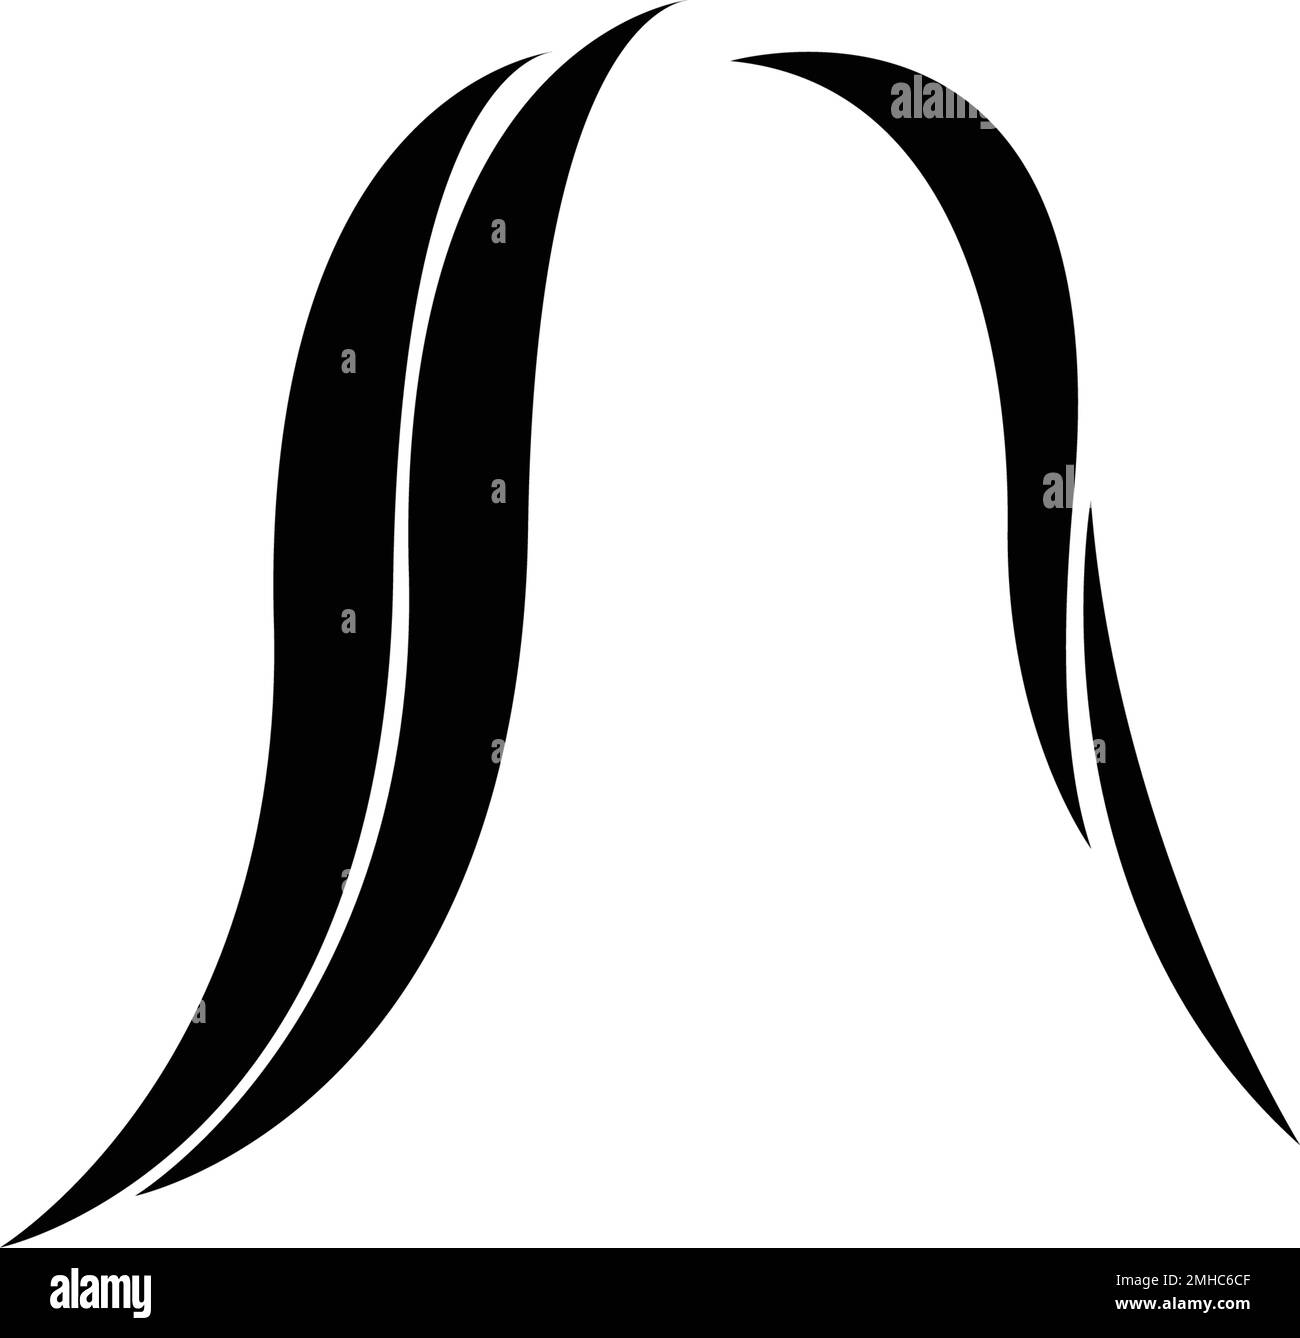 hair logo stock illustration design Stock Vector